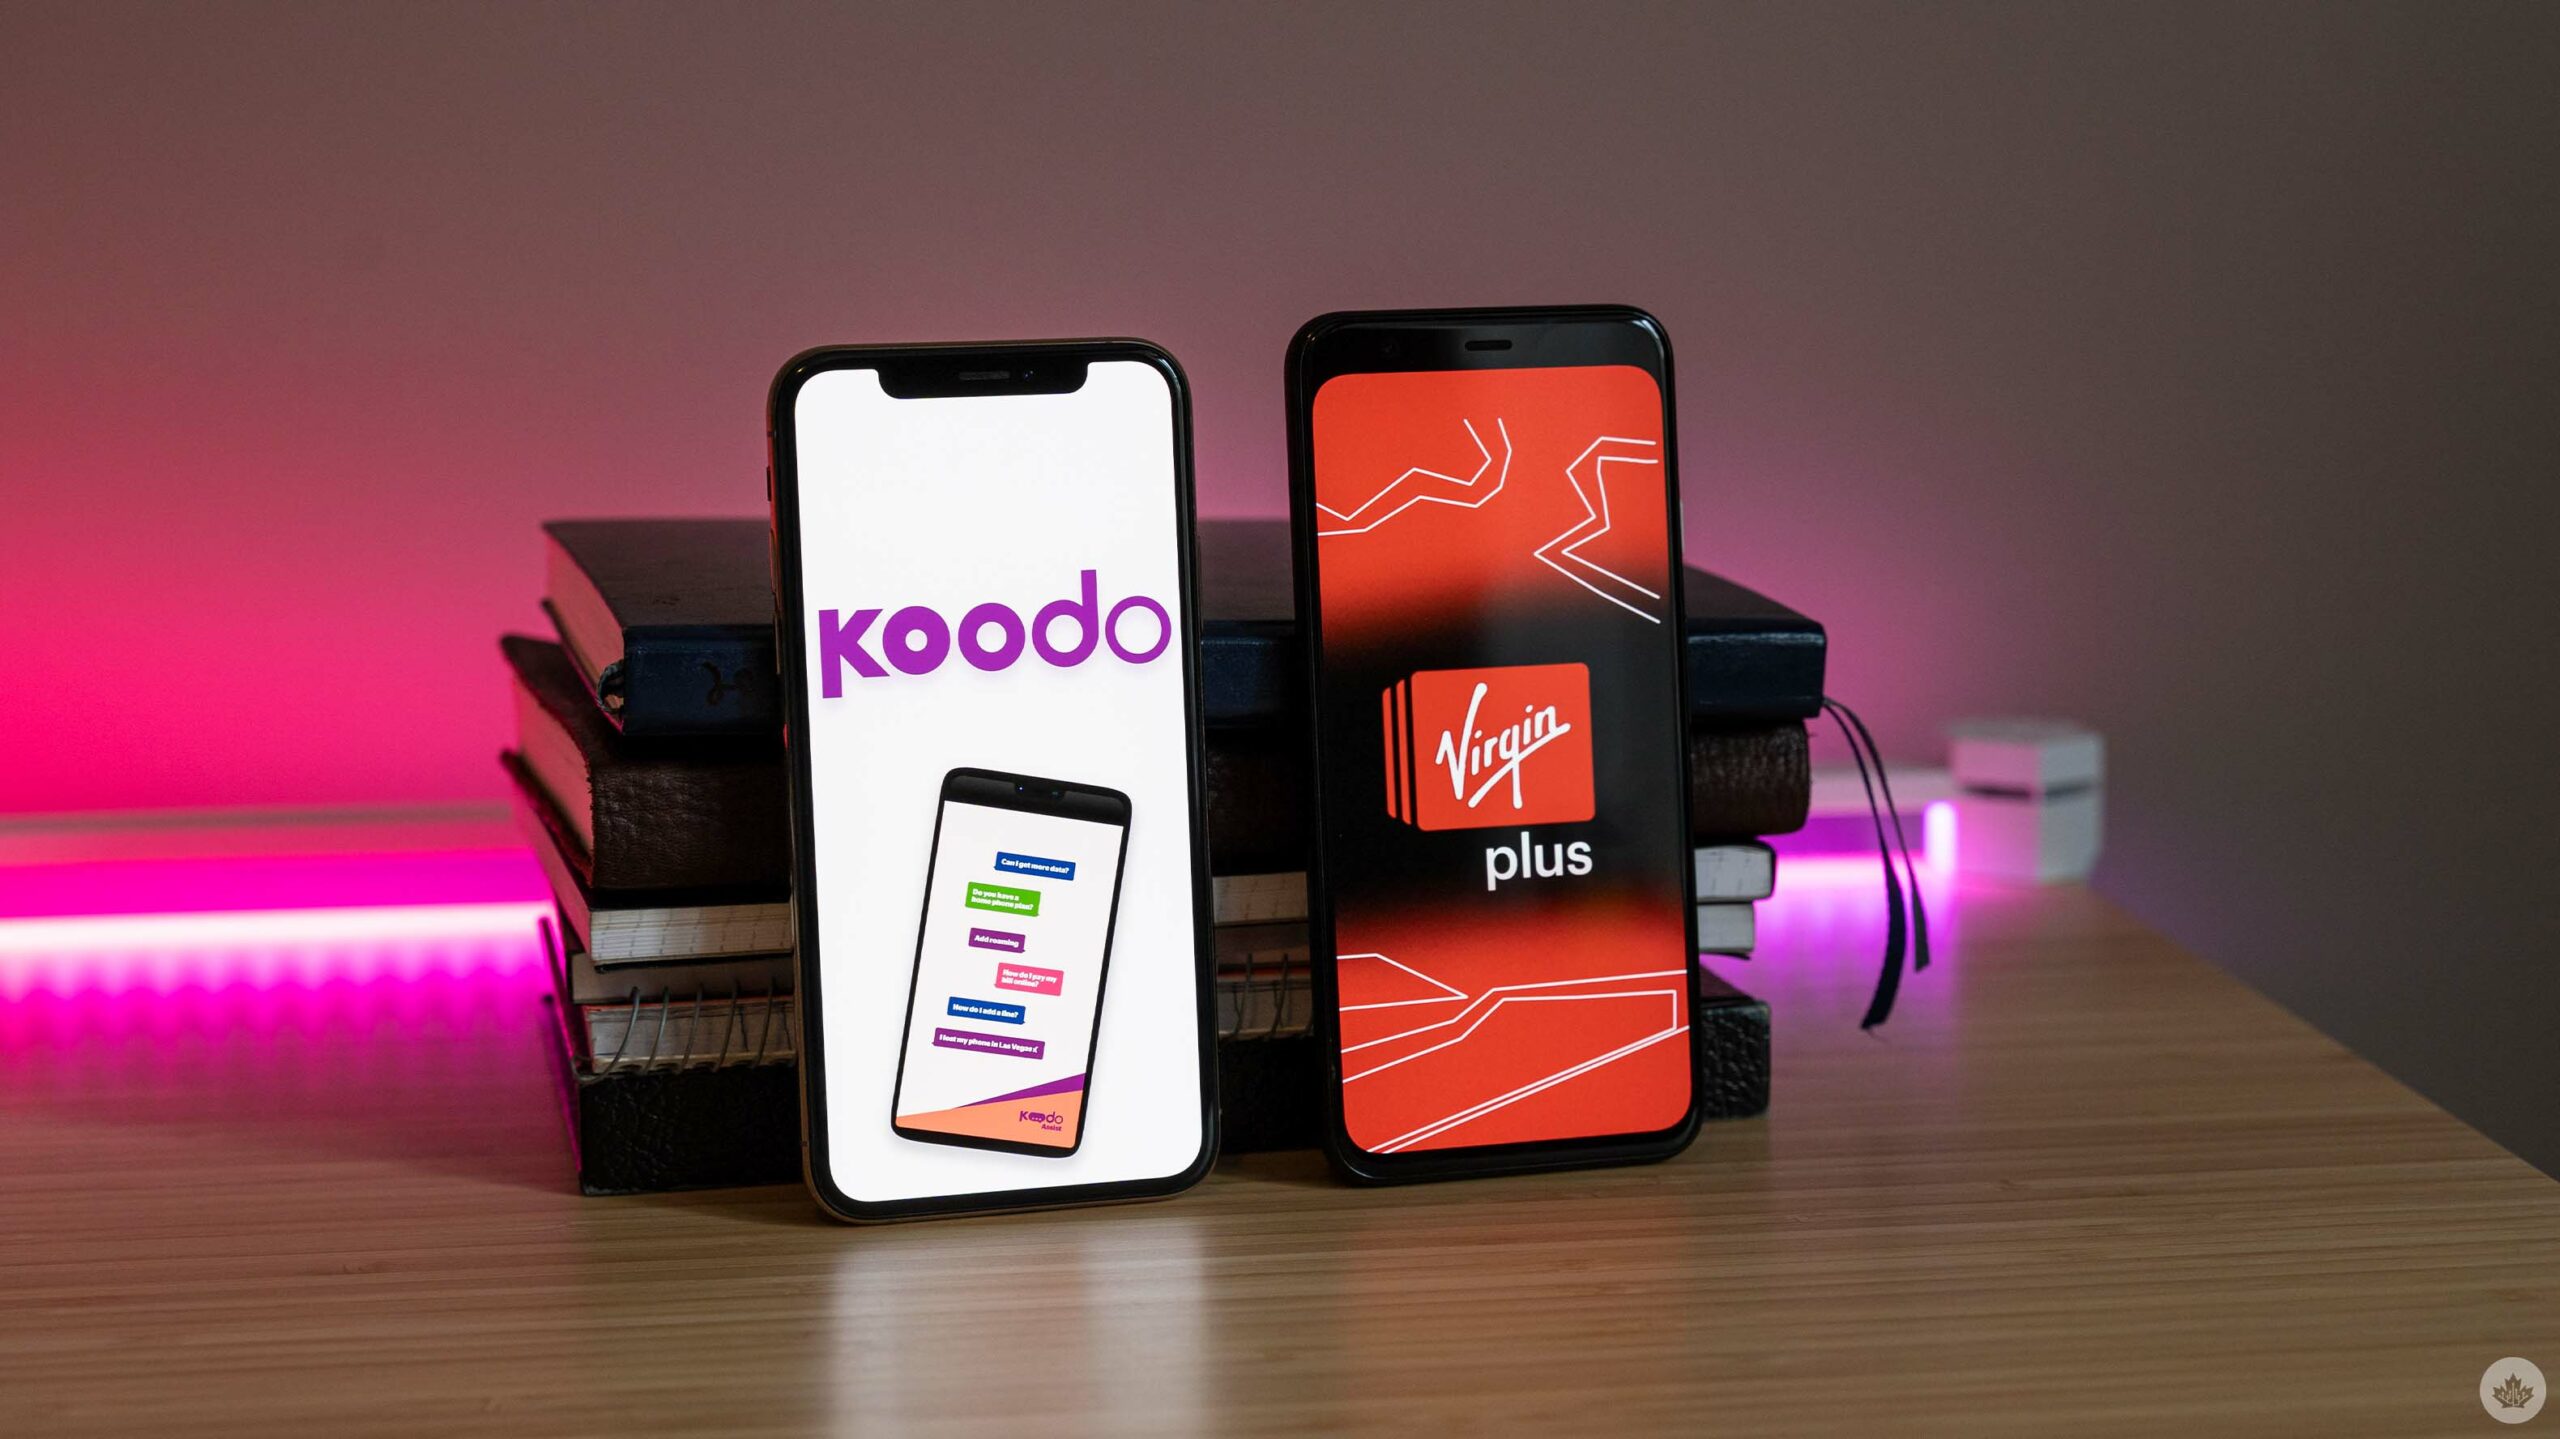 Koodo and Virgin logos on phones